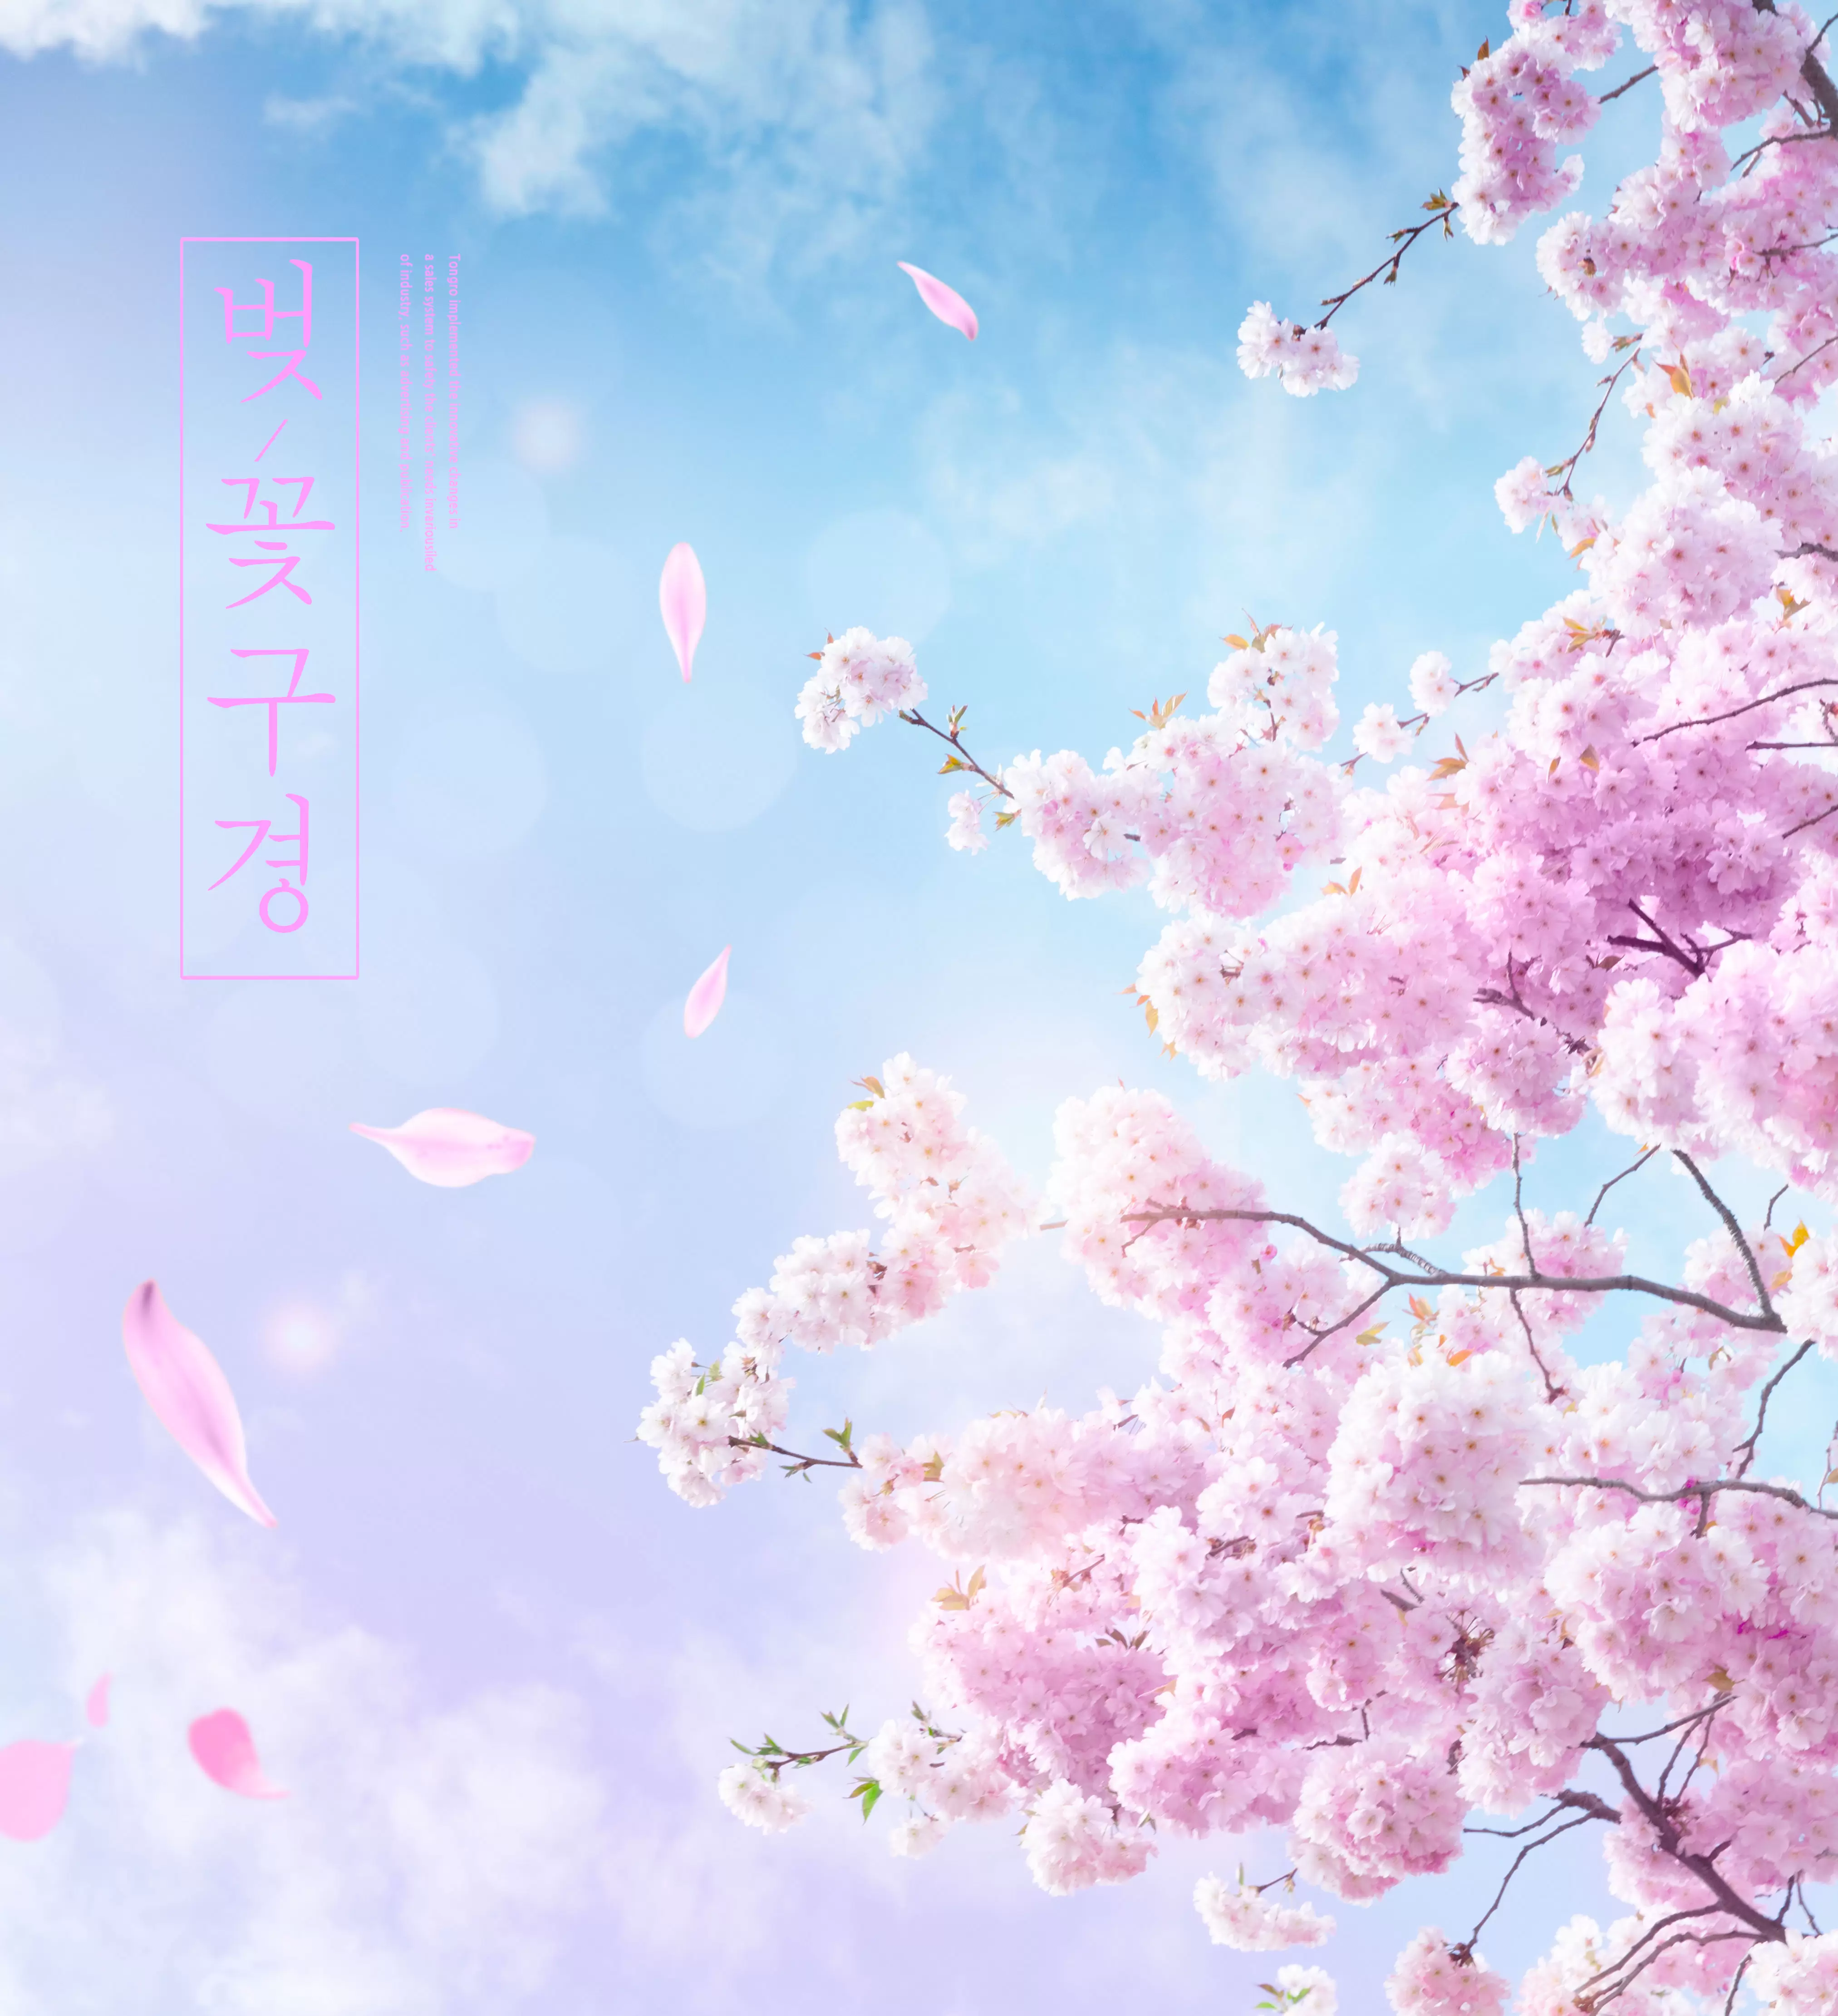 粉色樱花浪漫春季海报设计模板 (psd)插图